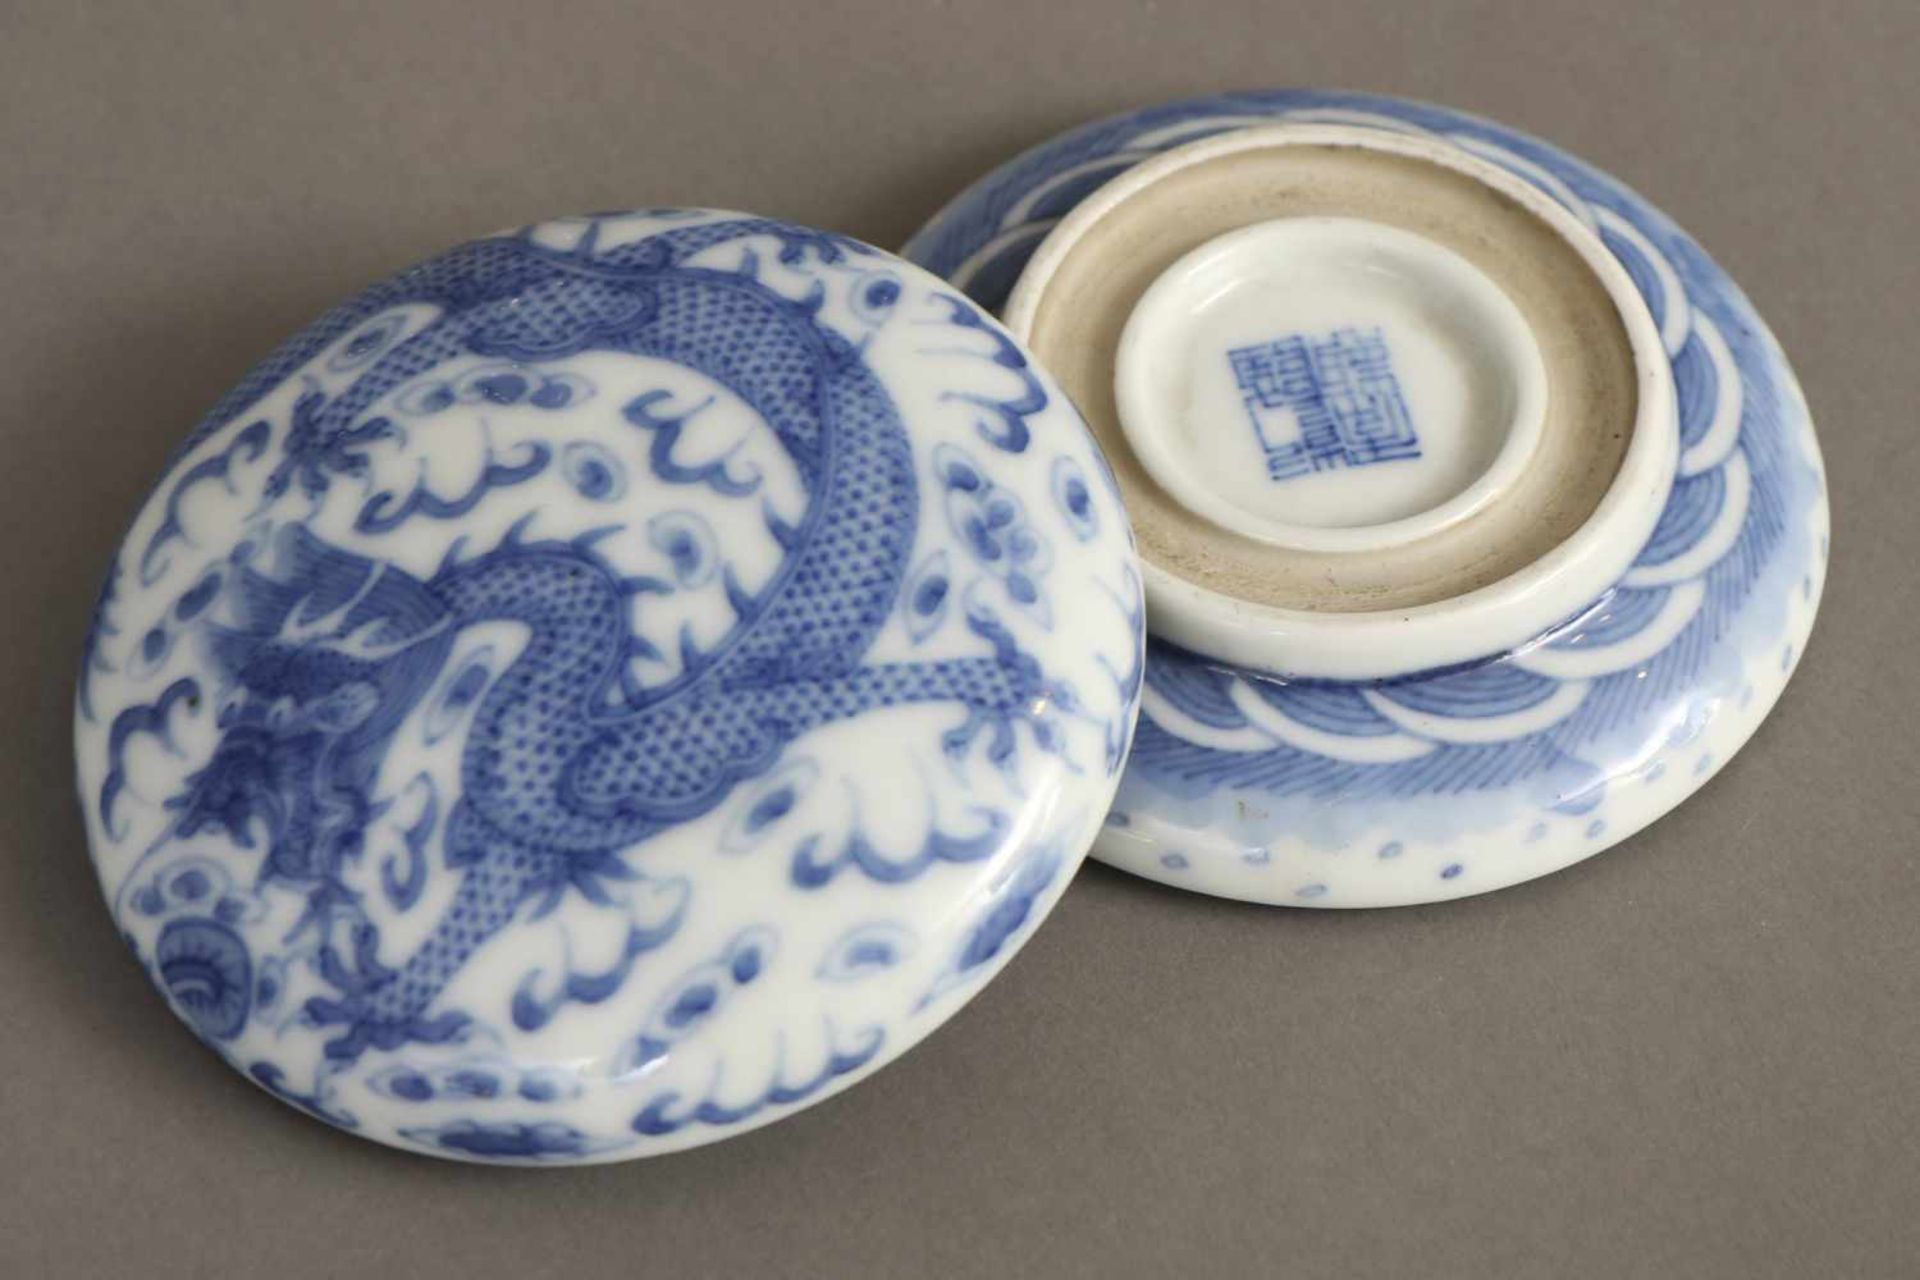 Chinesische DeckeldosePorzellan, Savonette-Form (rund, gedrückt), Unterglasur-blaues Drachendekor, - Image 2 of 2